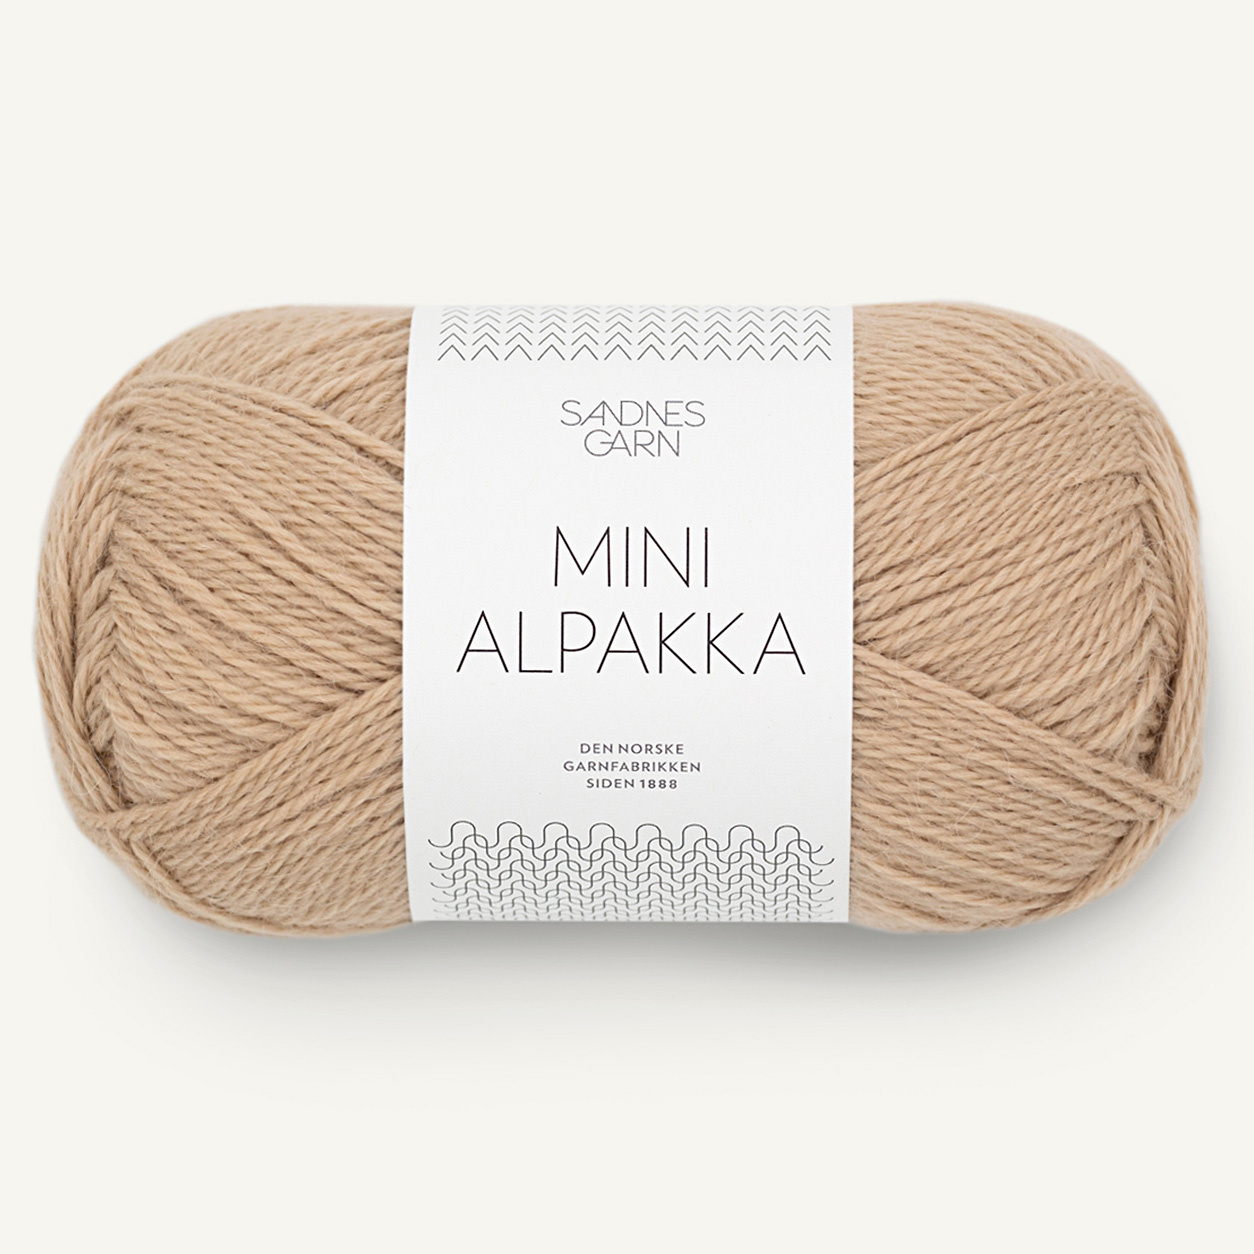 Sandnes Mini Alpakka, 2531, Chinobeige